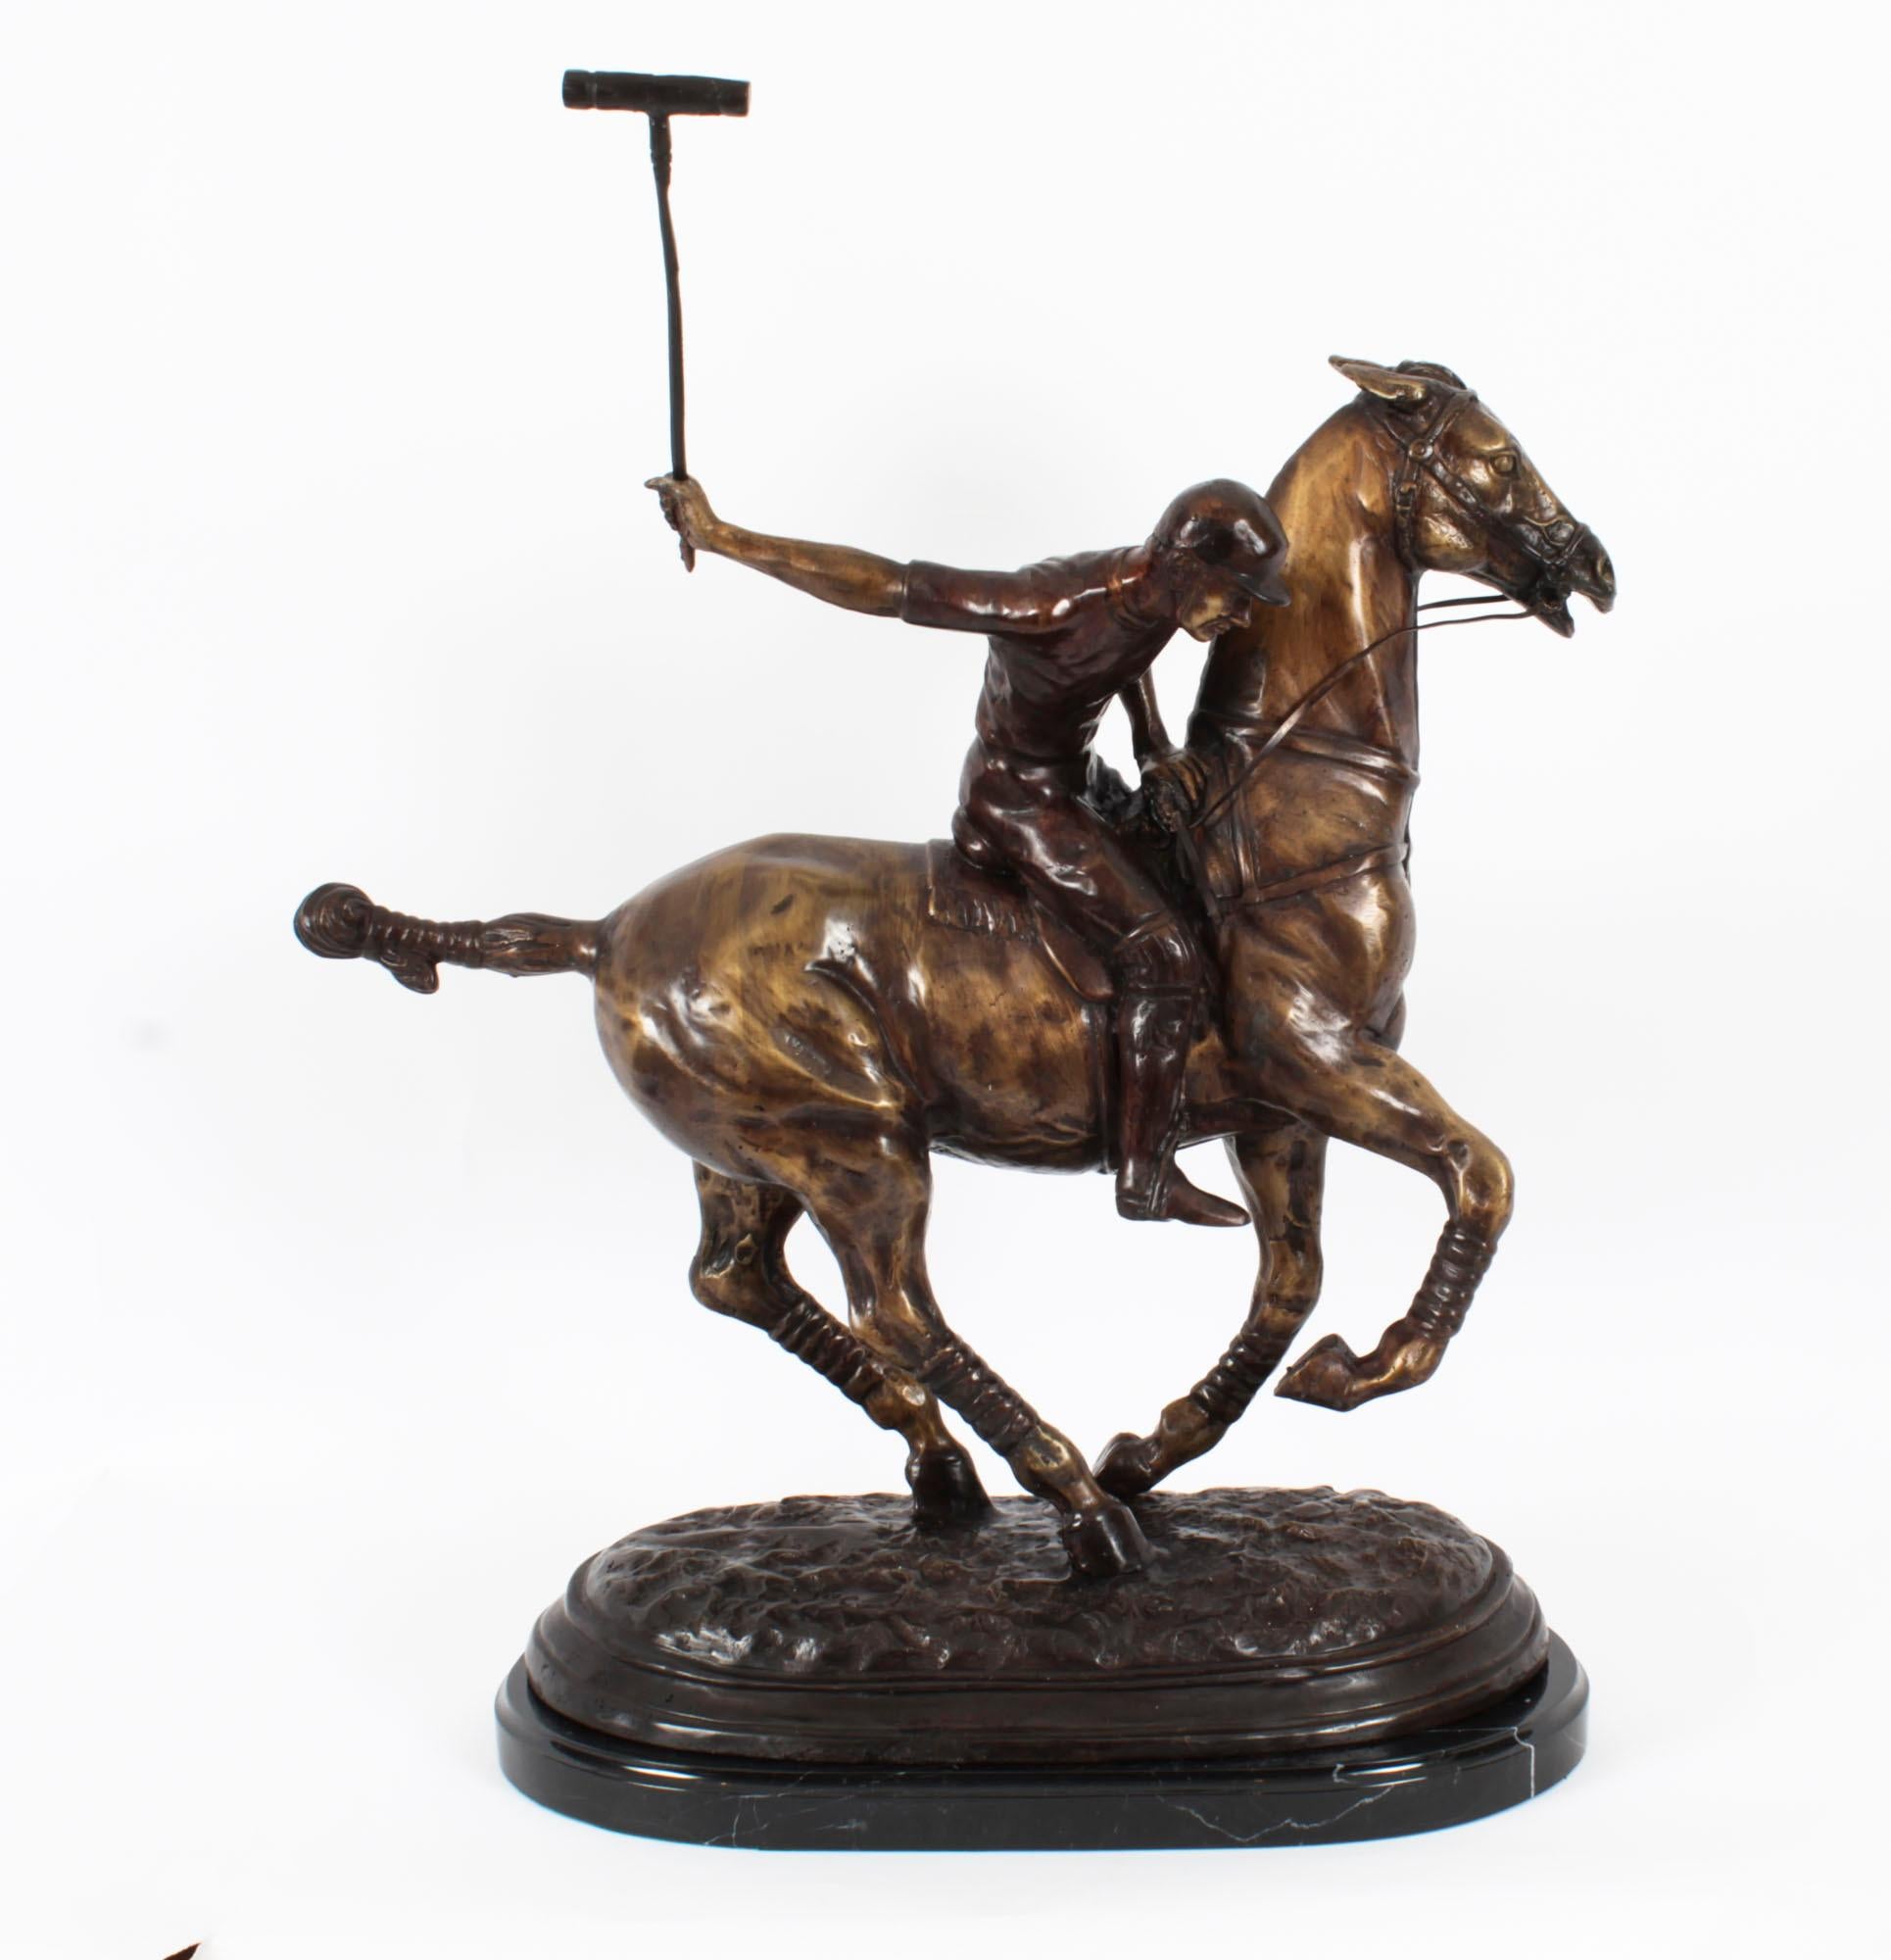 Il s'agit d'une belle sculpture en bronze représentant un joueur de polo sur son cheval galopant vers la balle à grande vitesse, datant du dernier quart du 20e siècle.

Coulée selon le procédé traditionnel de la cire perdue.

L'attention portée aux